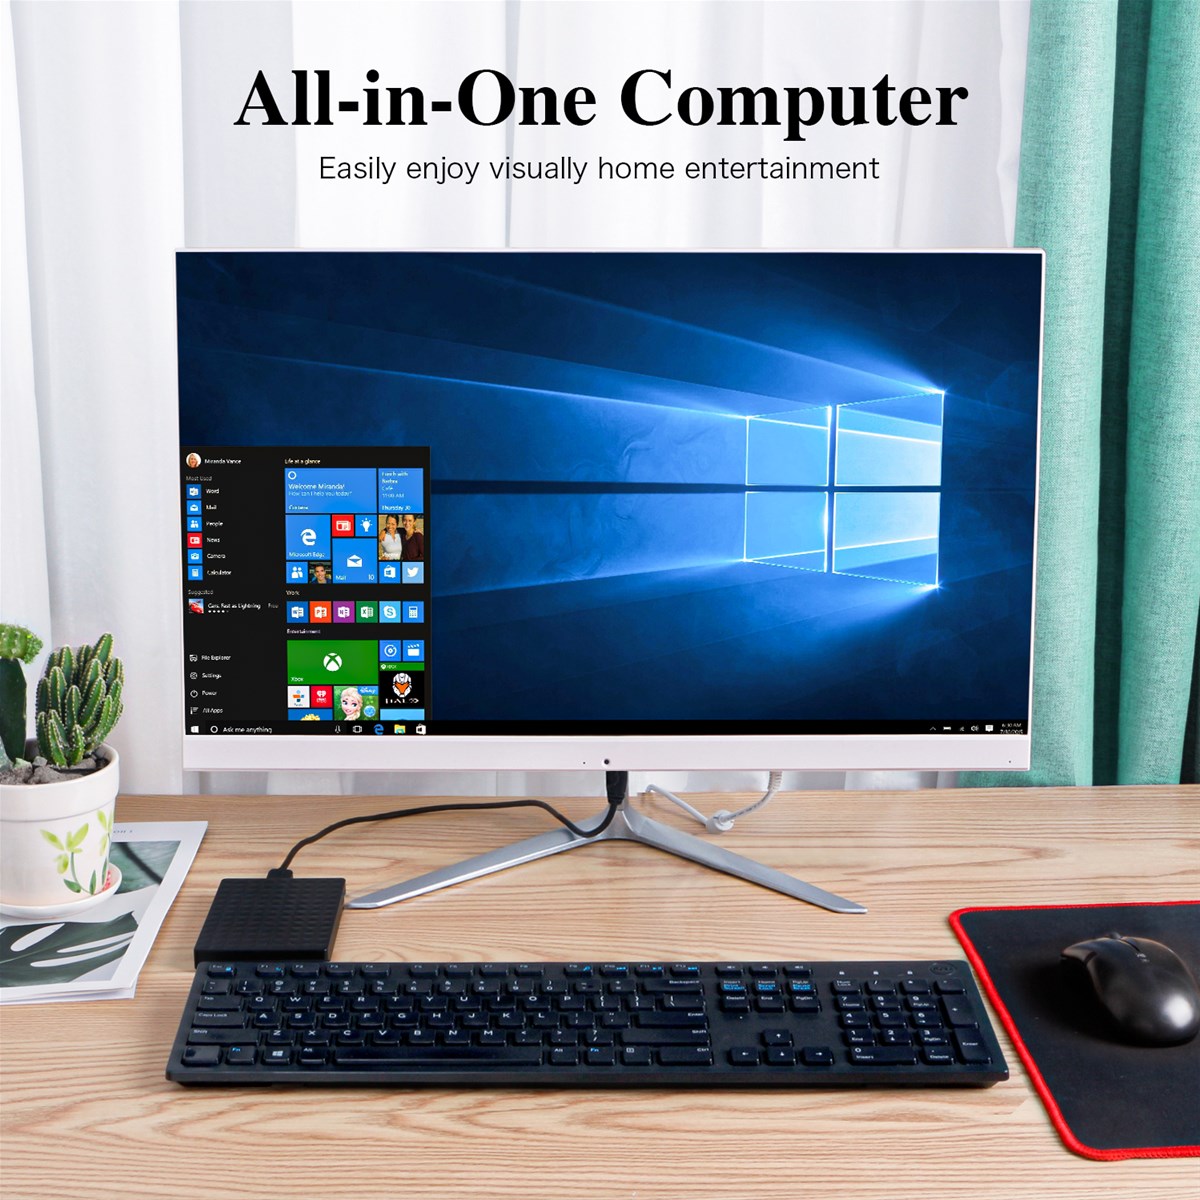 allinone mini pc win10 4GB RAM 256GB ROM Intel Core 4200M 4300M Processor wintel mini pc allinone office computer